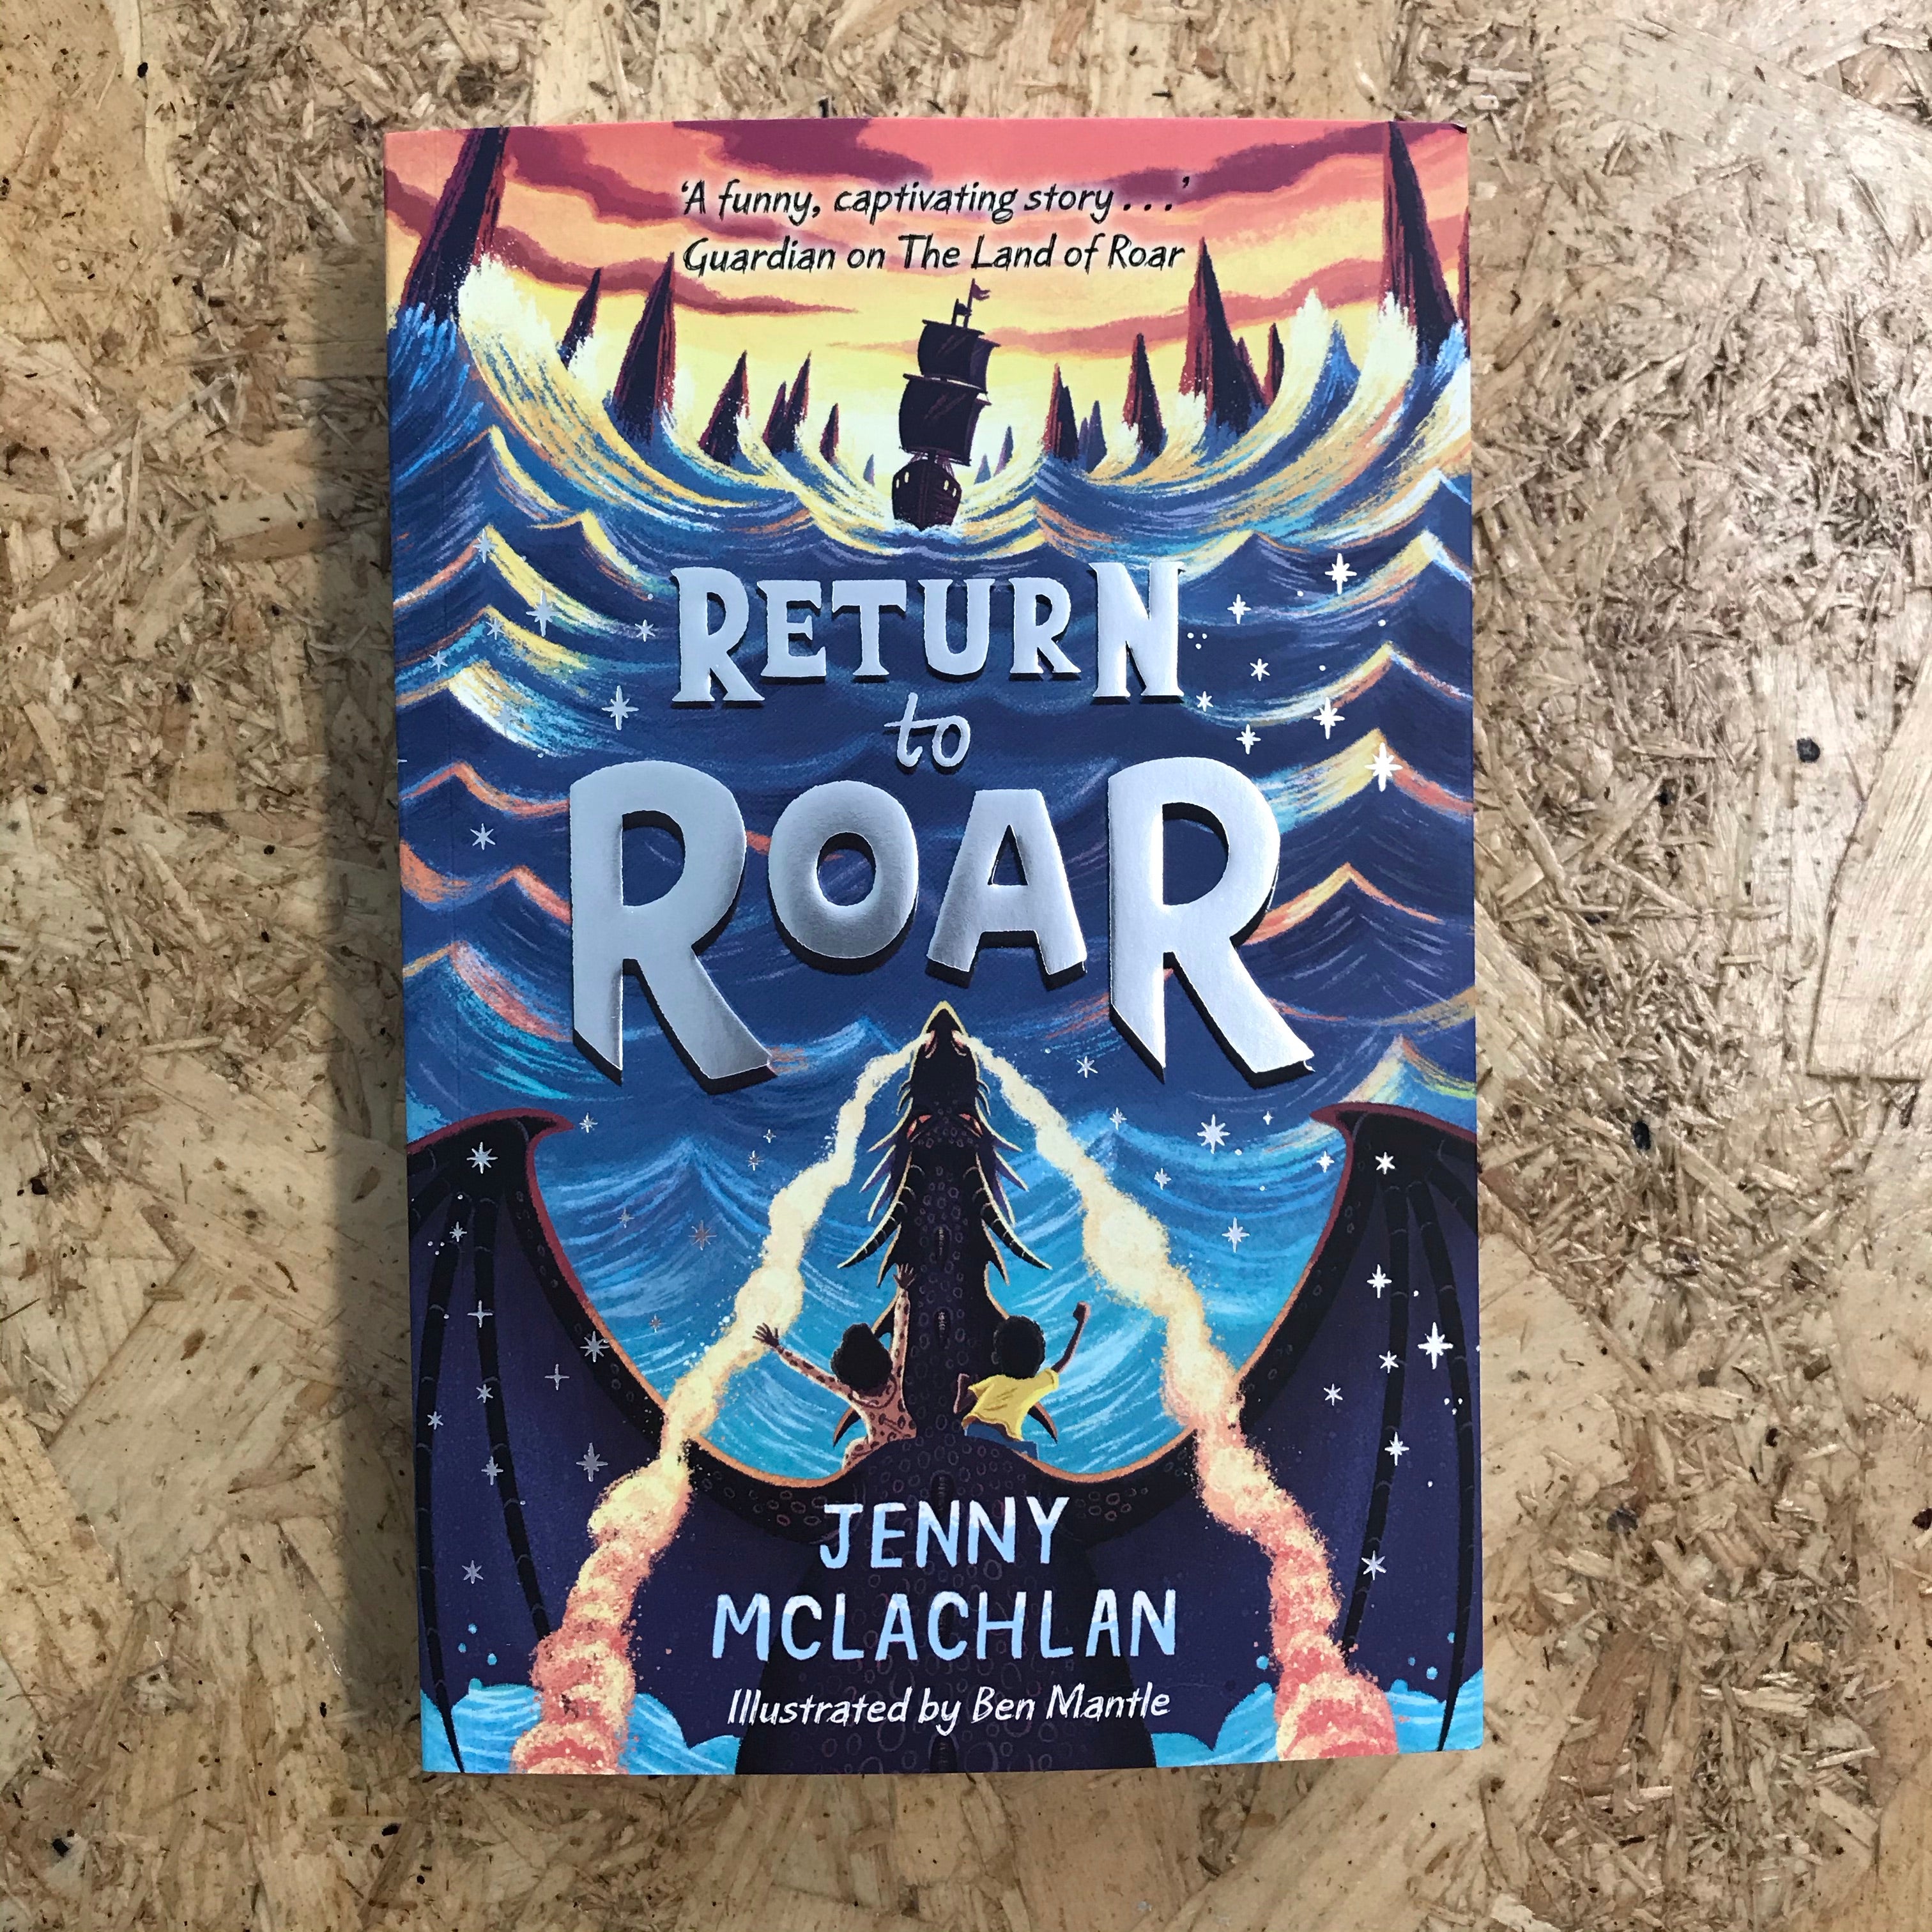 The Battle for Roar (The Land of Roar by Jenny McLachlan